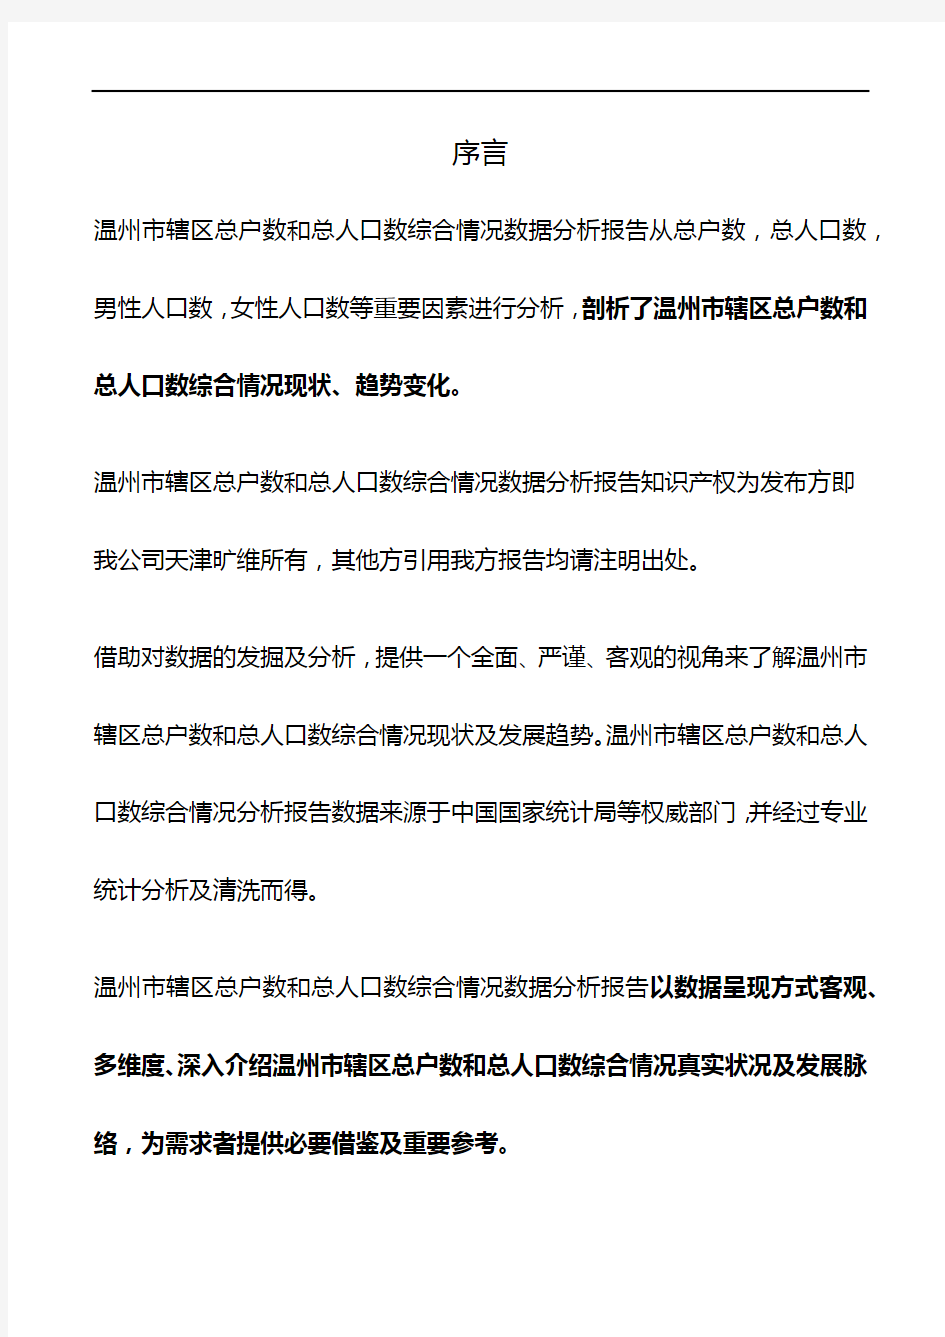 浙江省温州市辖区总户数和总人口数综合情况数据分析报告2019版